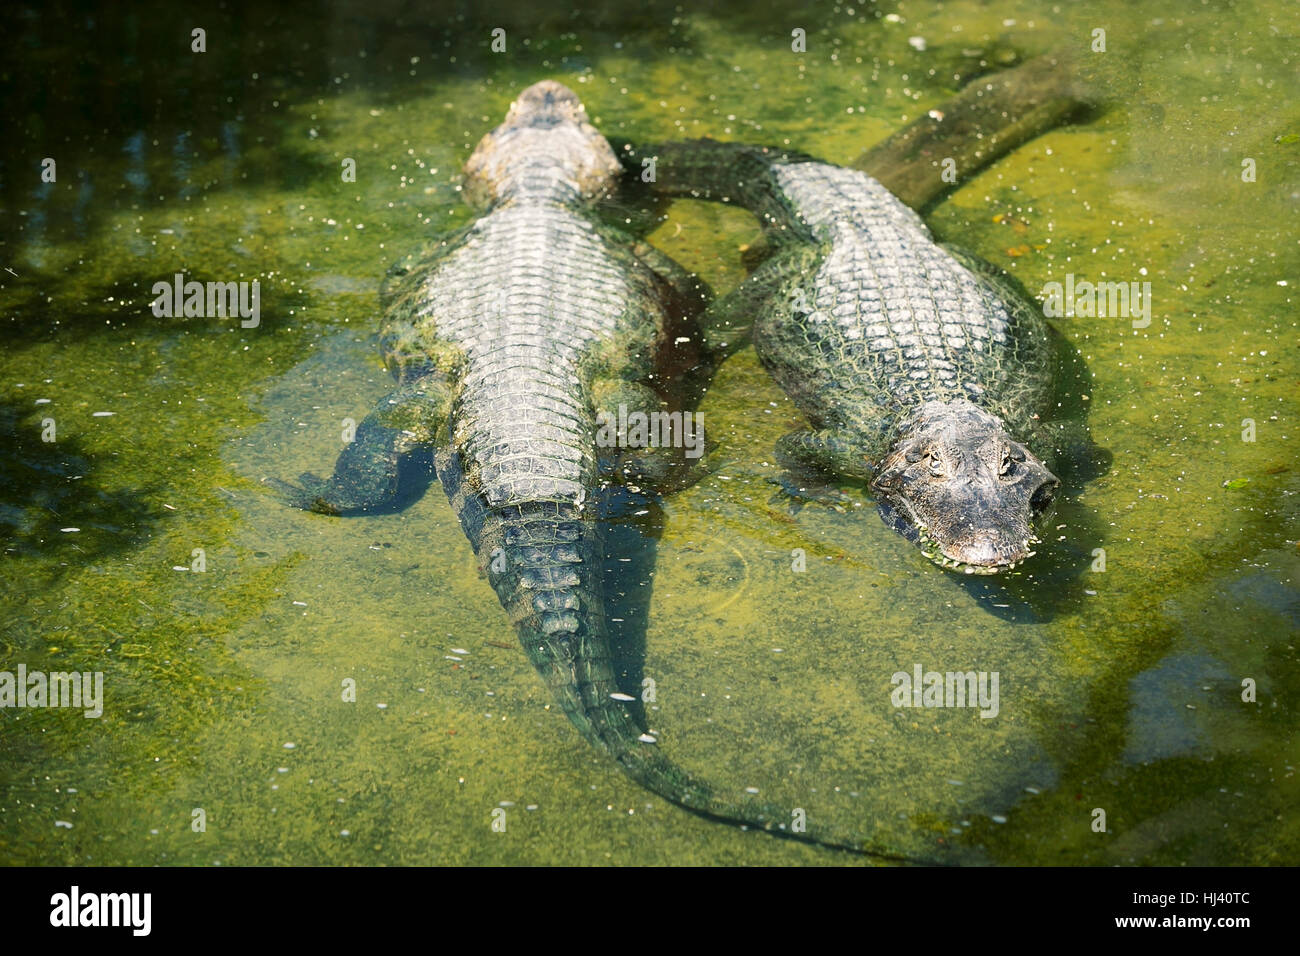 Zwei Caiman Krokodile im Wasser Stockfoto